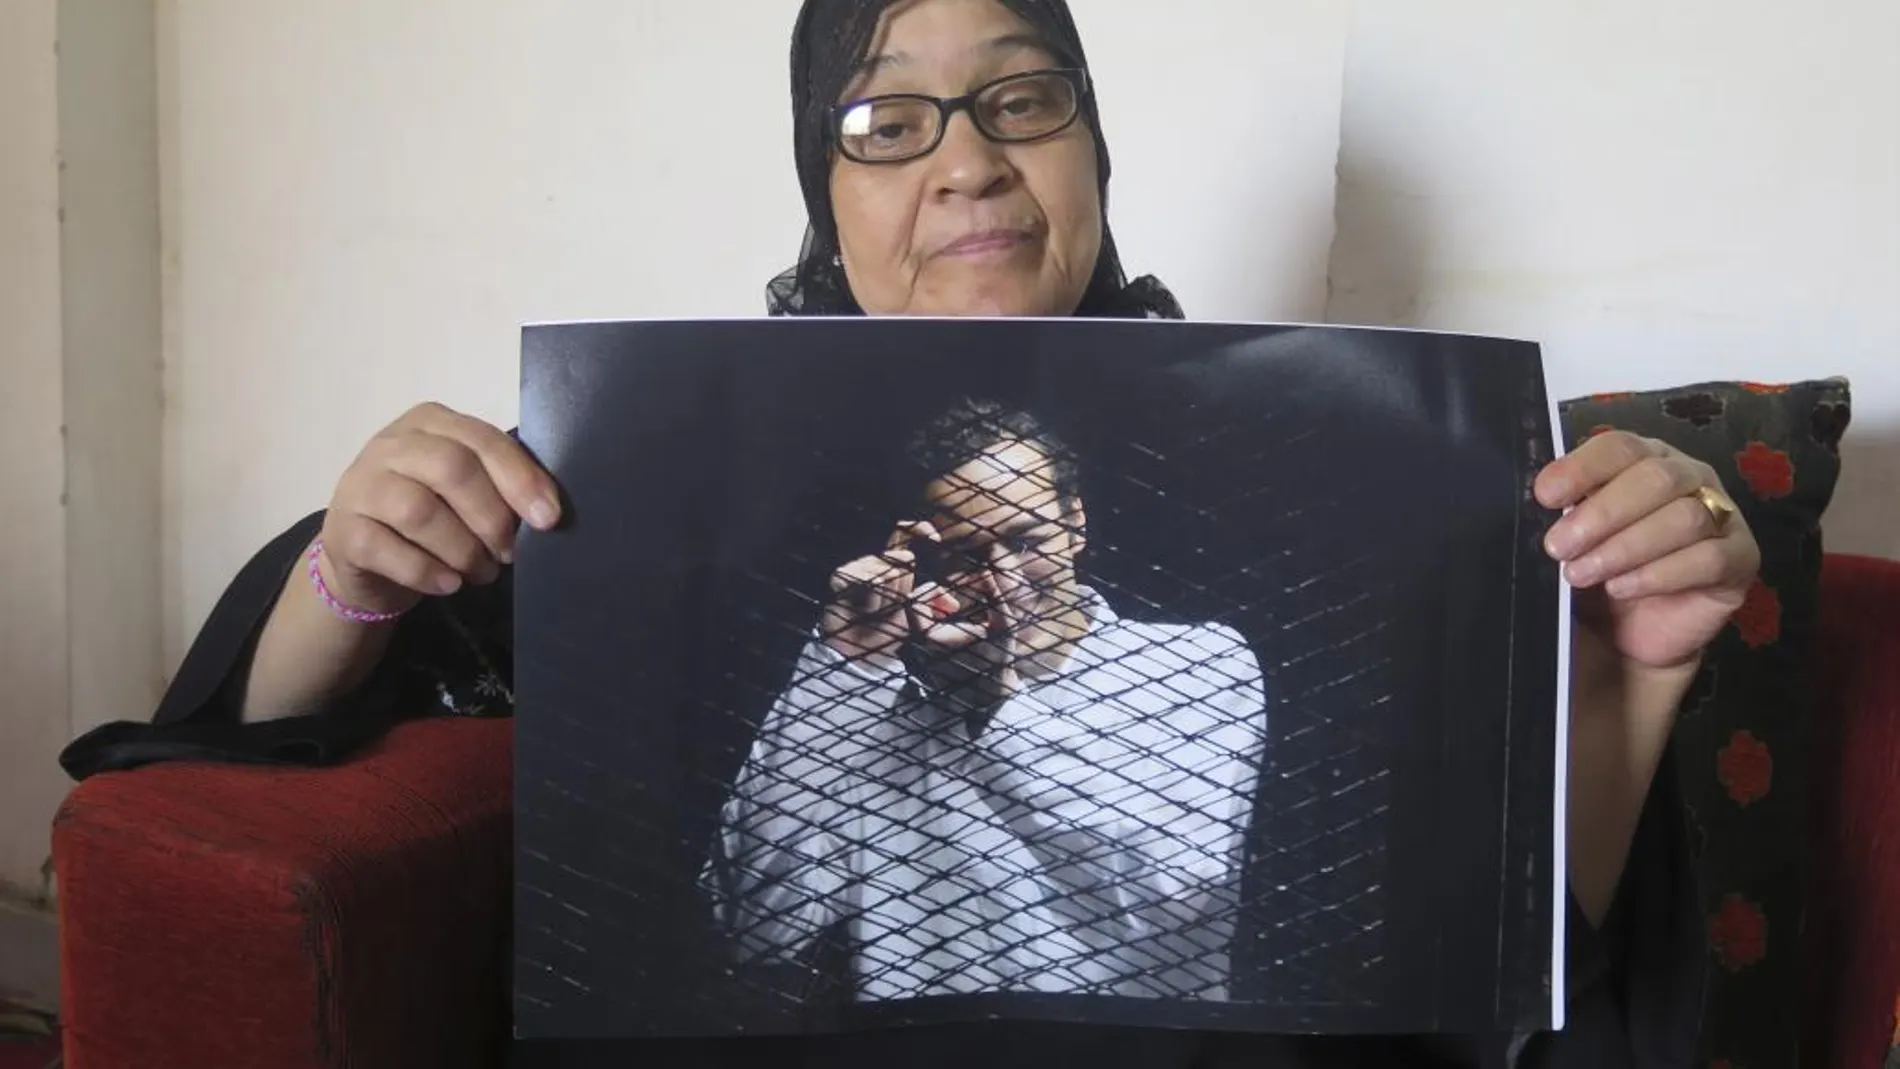 Reda, la madre del fotoperiodista egipcio Mahmud Abdelshakur Abu Zeid, alias "Shawkan", muestra una foto de su hijo